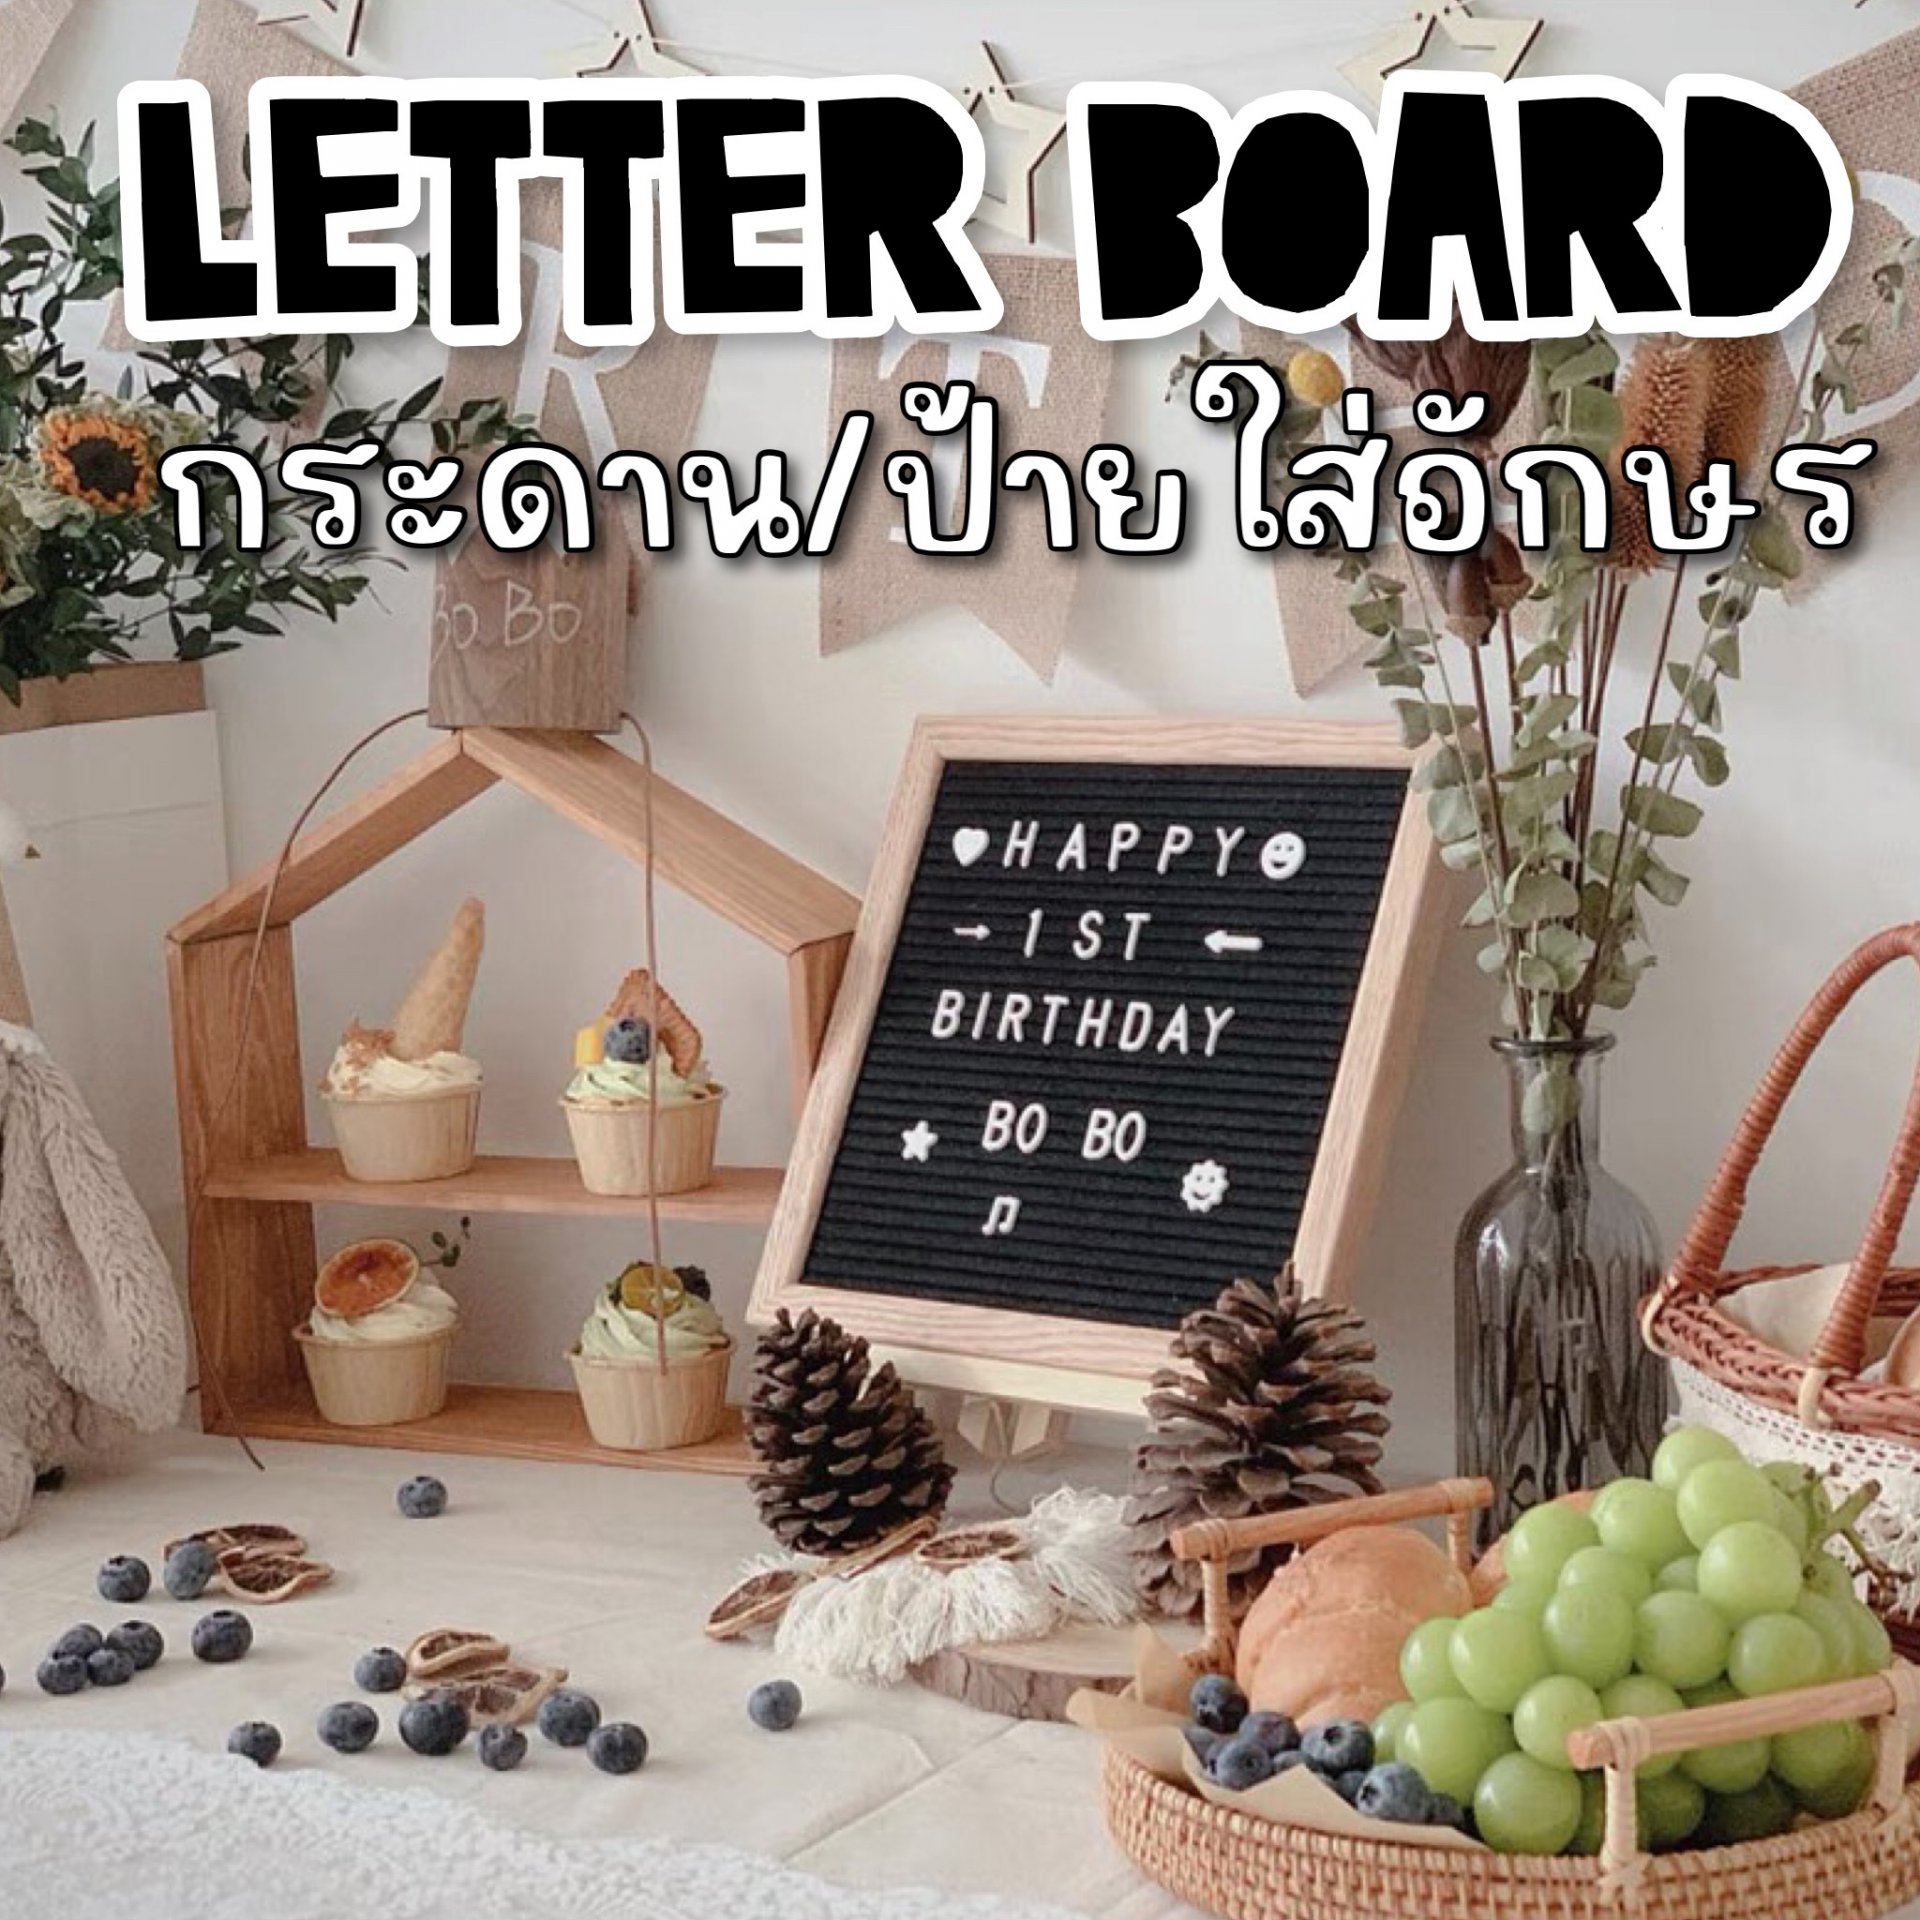 Letter board กระดาน / ป้ายใส่อักษร